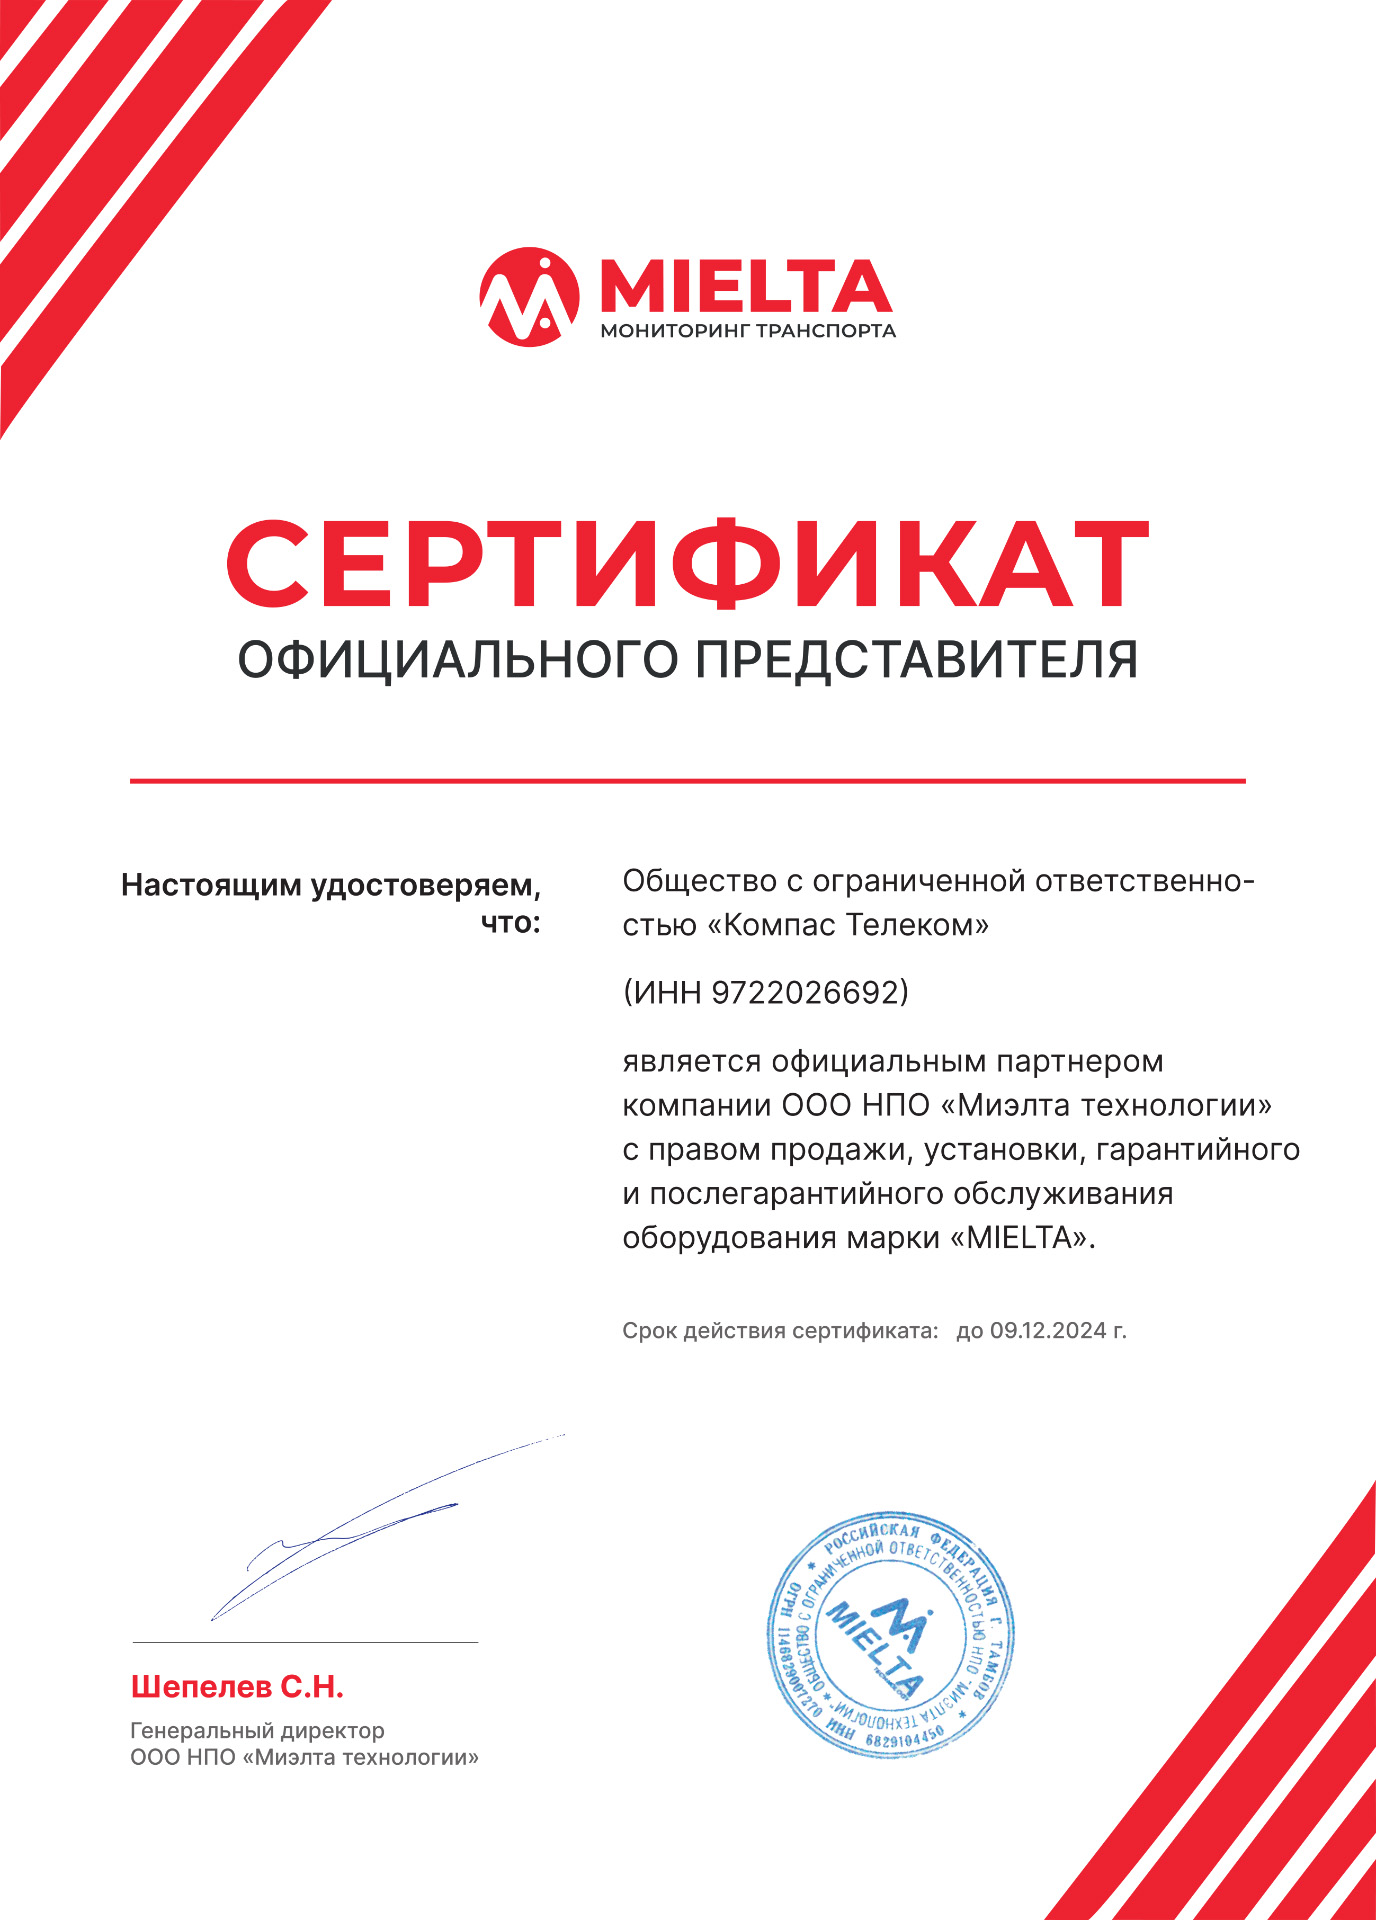 Сертификат официального партнера Миэлта